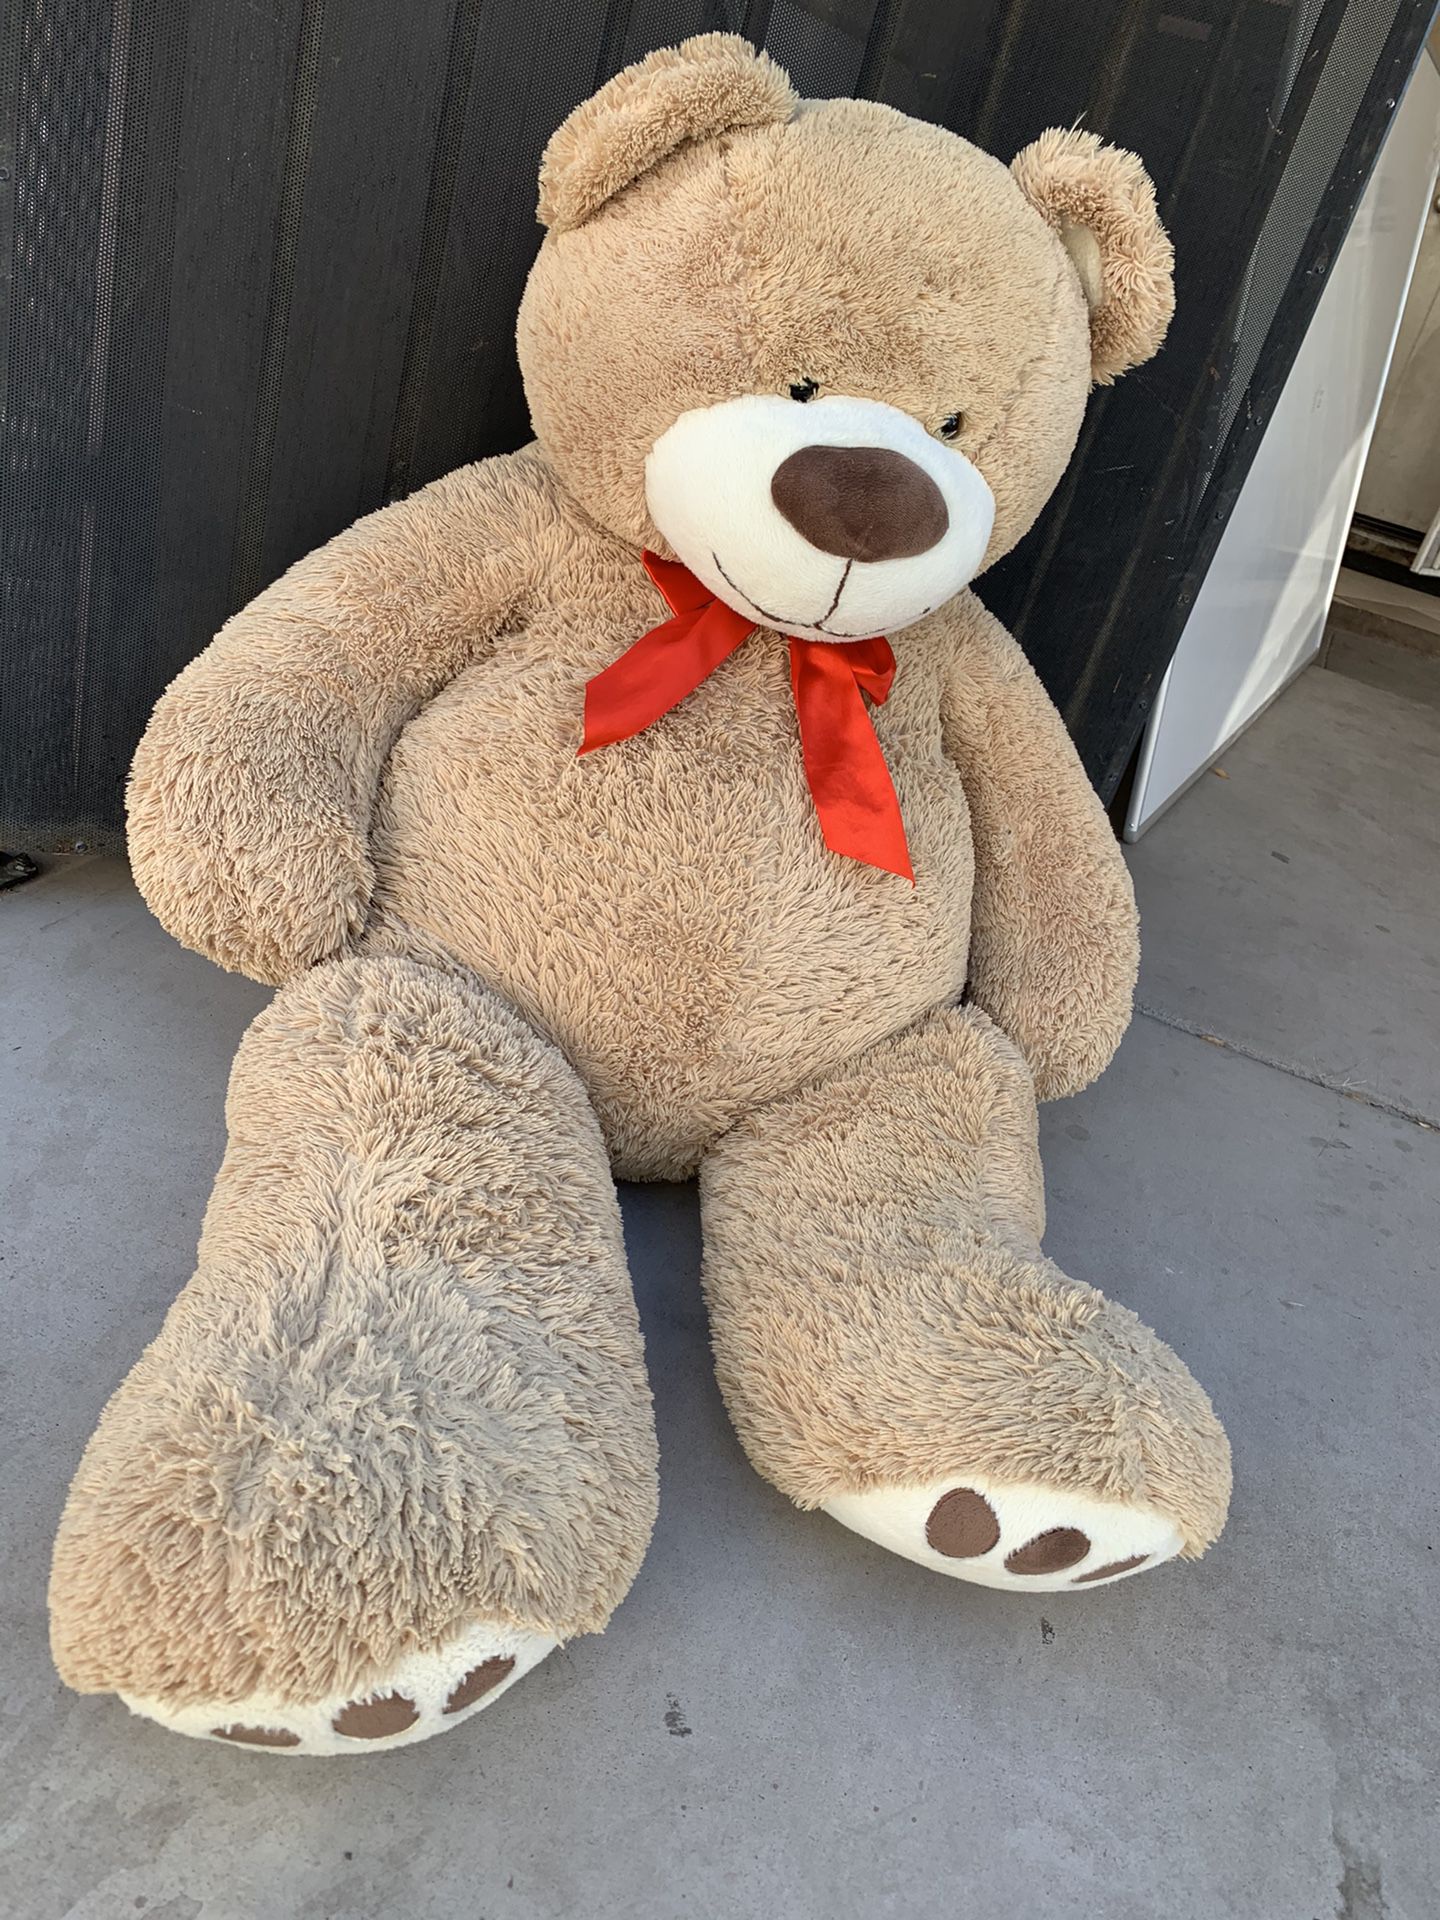 Big used teddy bear